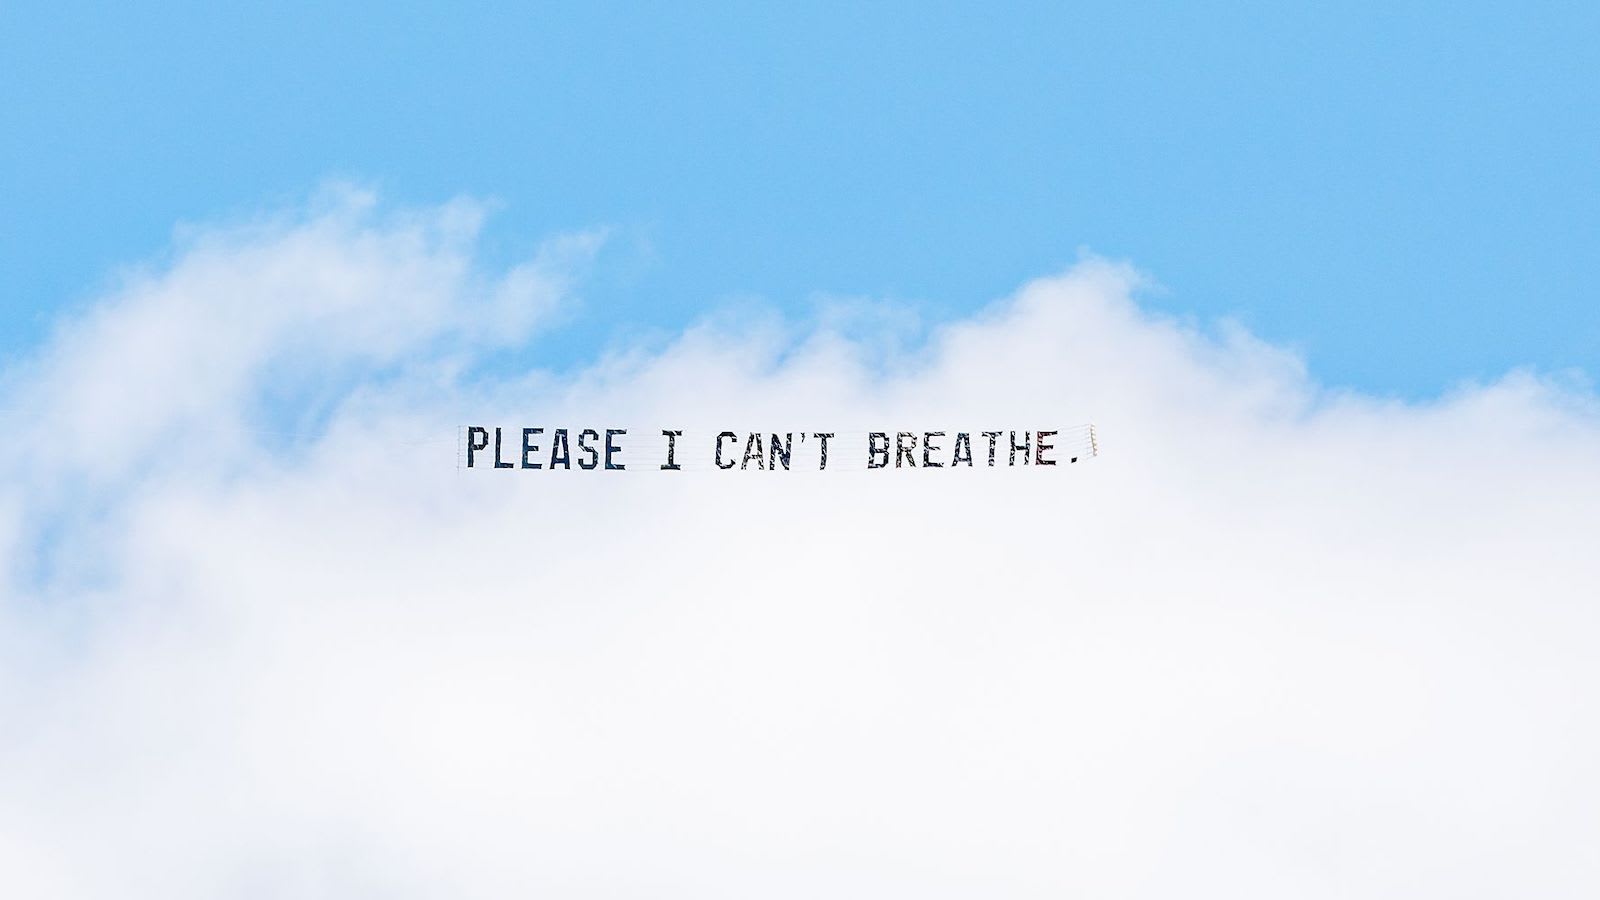 "لا أستطيع التنفس"..آخر عبارات جورج فلويد تحلّق فوق سماء مدن أمريكا